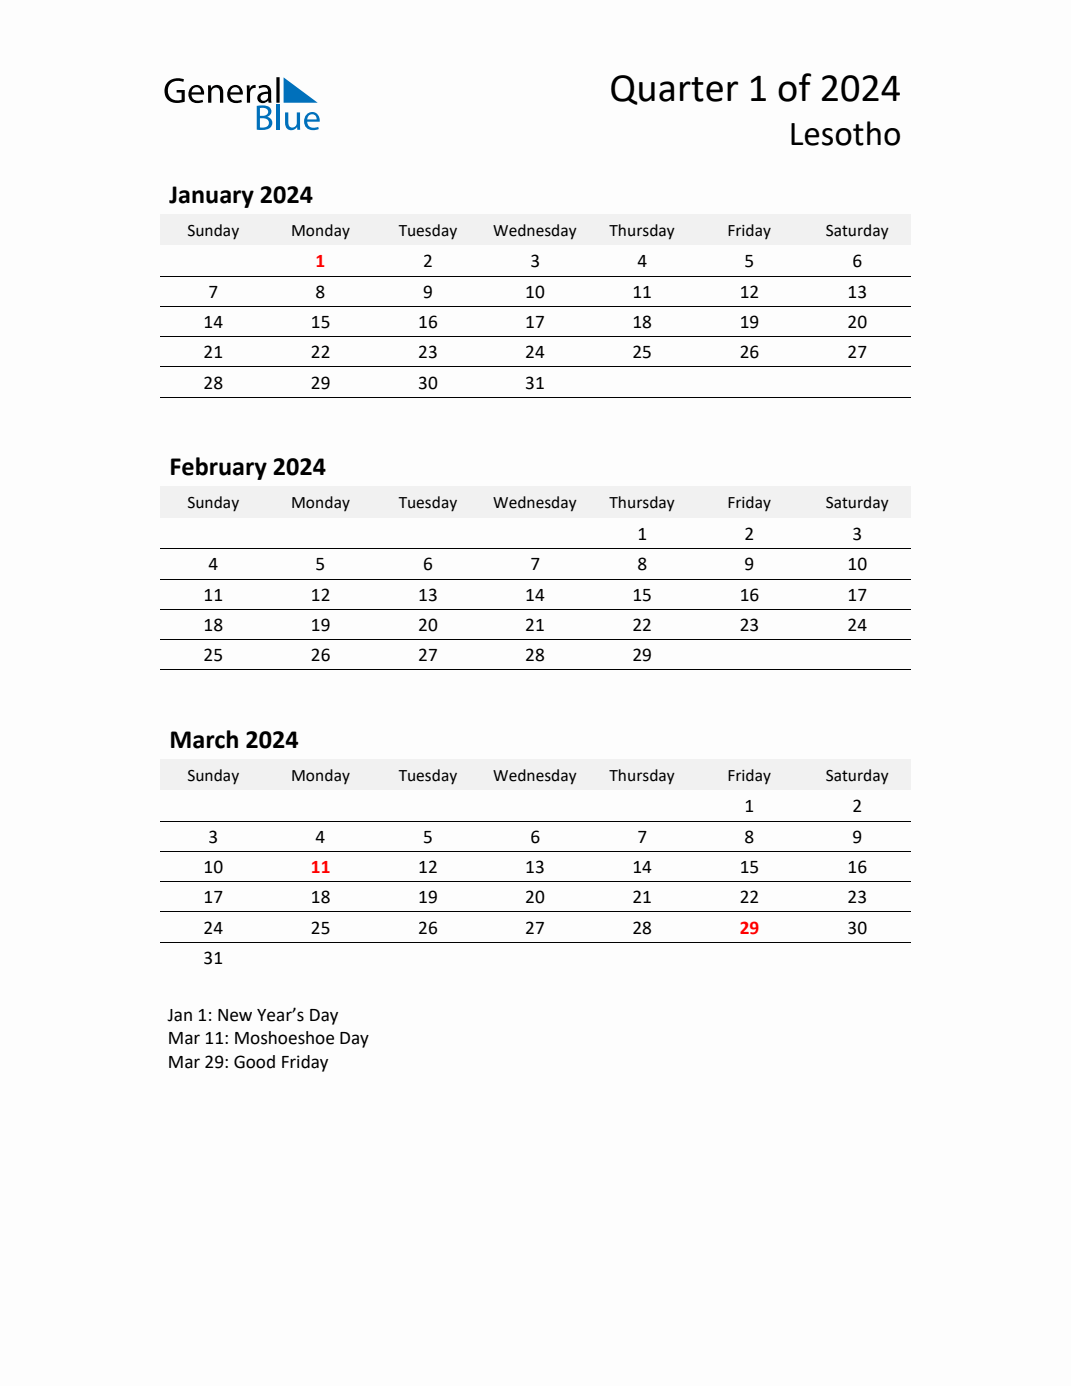 q1-2024-quarterly-calendar-with-lesotho-holidays